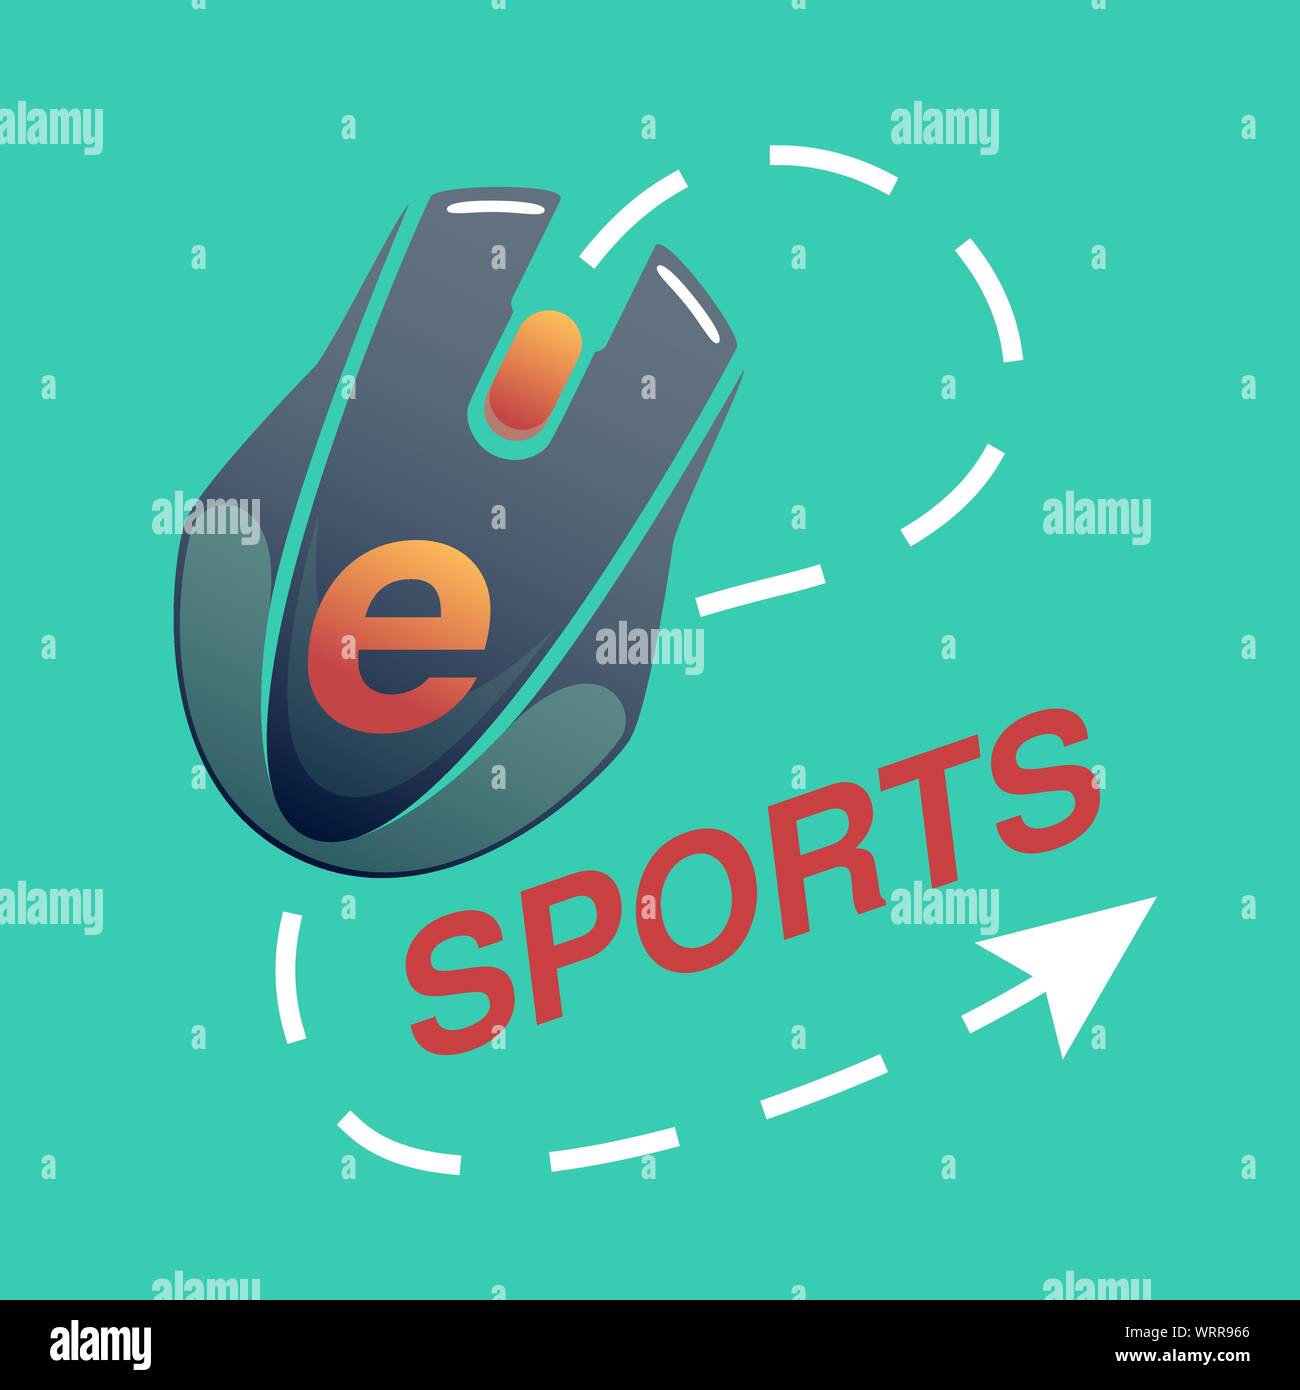 L'e-sport logo avec des lettres rouges sur fond vert avec un ordinateur, la souris et le curseur, scénario télévision icône dans style casual Illustration de Vecteur